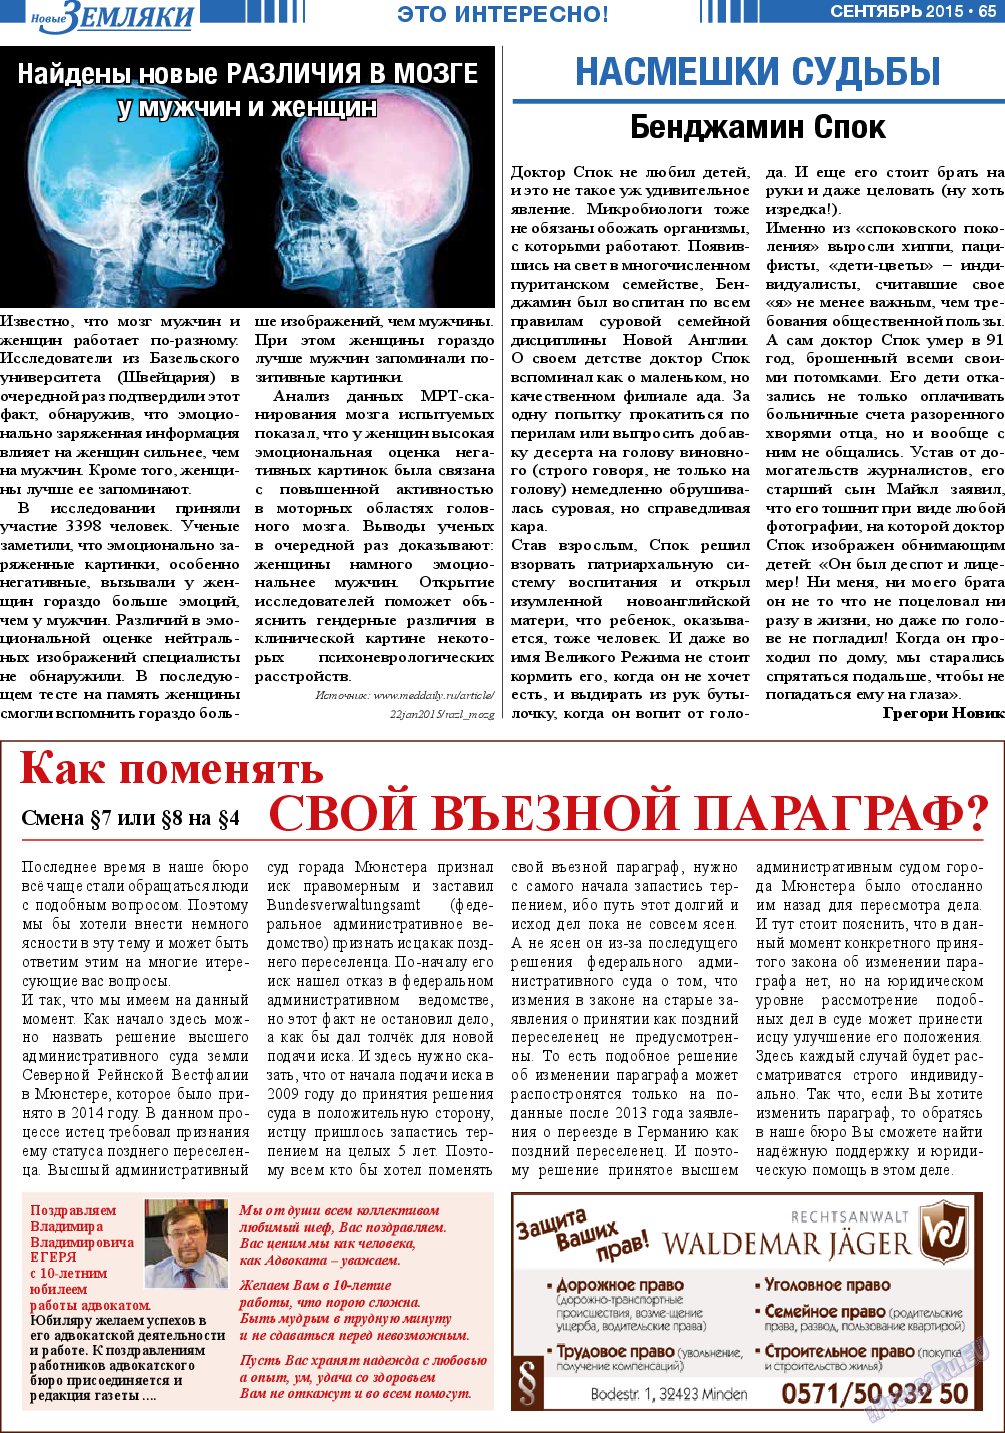 Новые Земляки (газета). 2015 год, номер 9, стр. 65